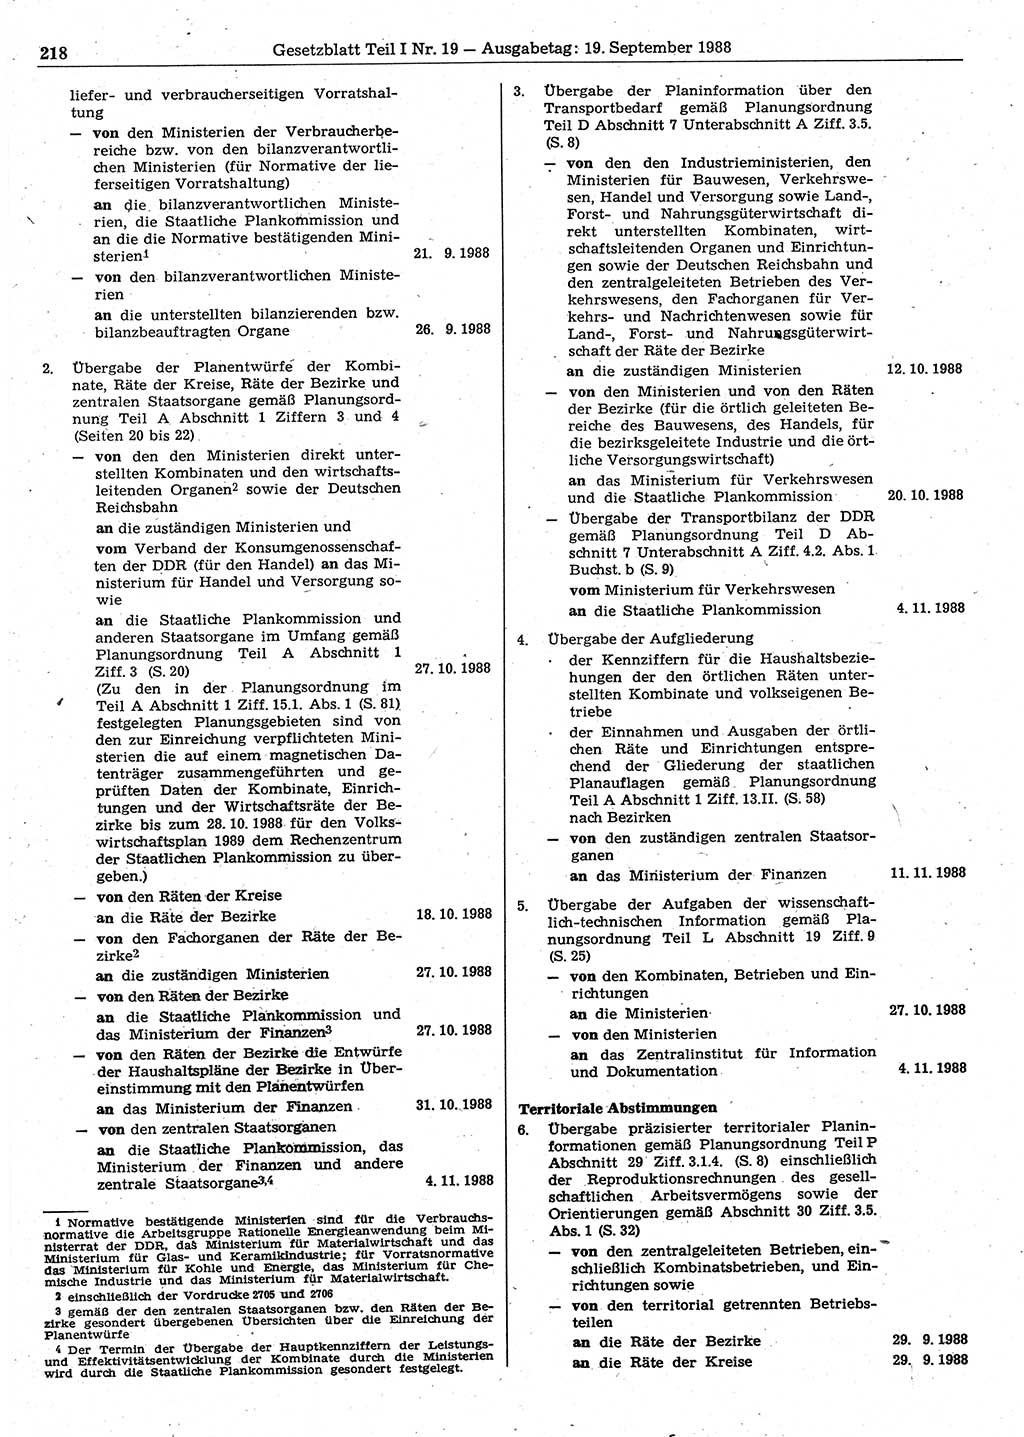 Gesetzblatt (GBl.) der Deutschen Demokratischen Republik (DDR) Teil Ⅰ 1988, Seite 218 (GBl. DDR Ⅰ 1988, S. 218)